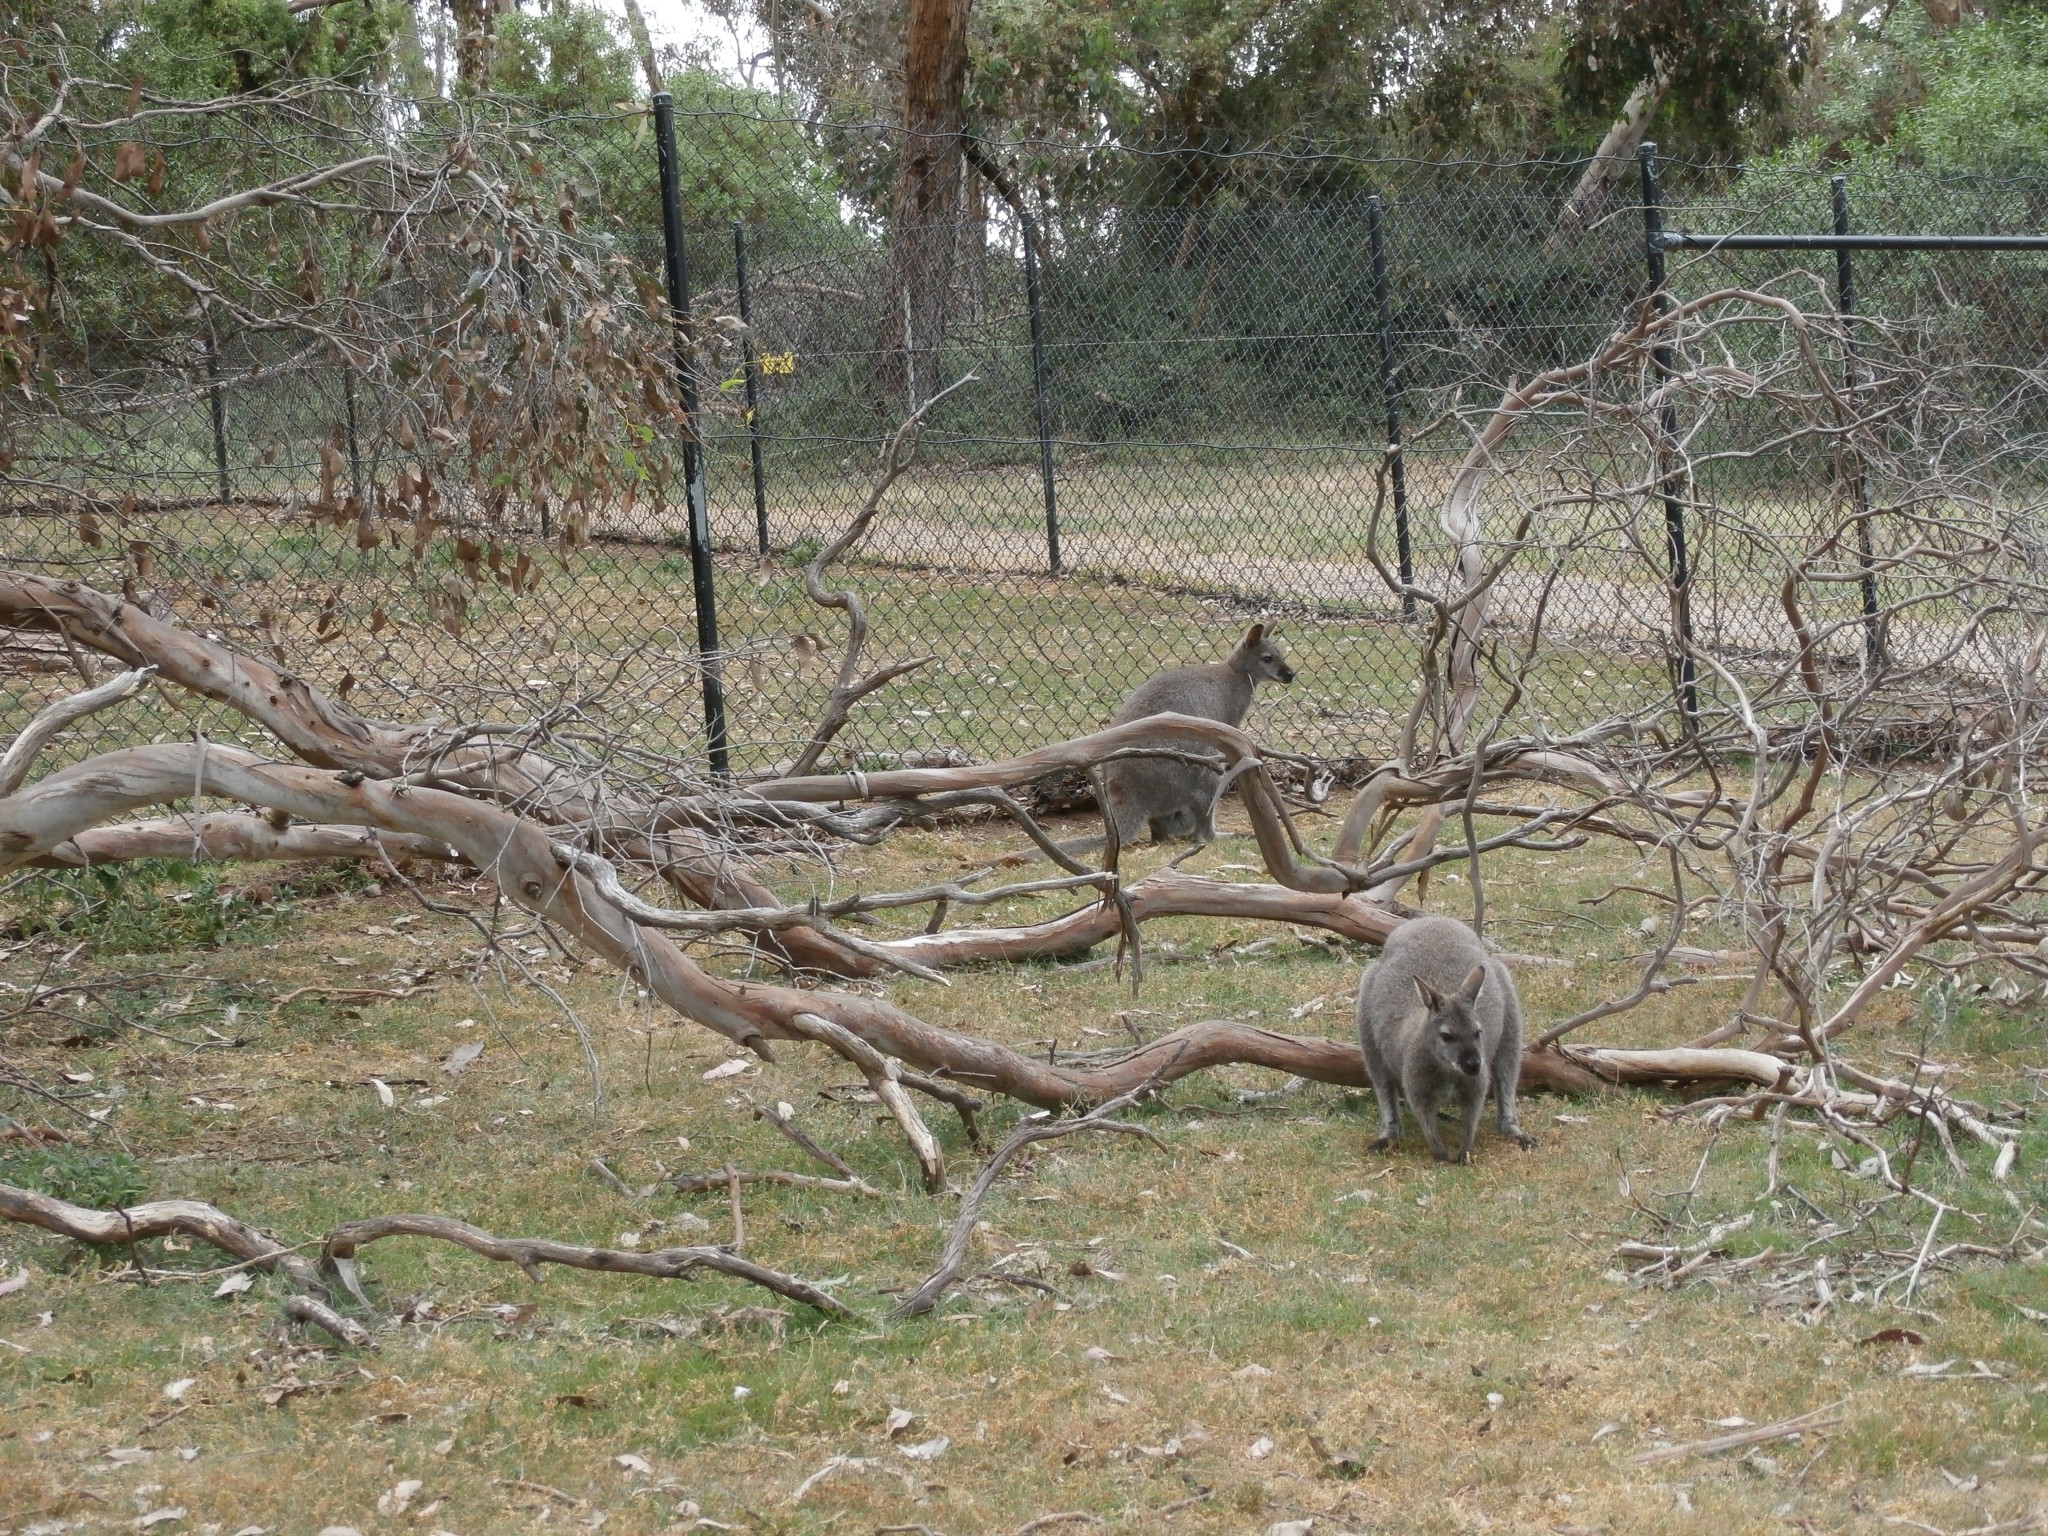 Kangaroo imposters, i.e. wallabies